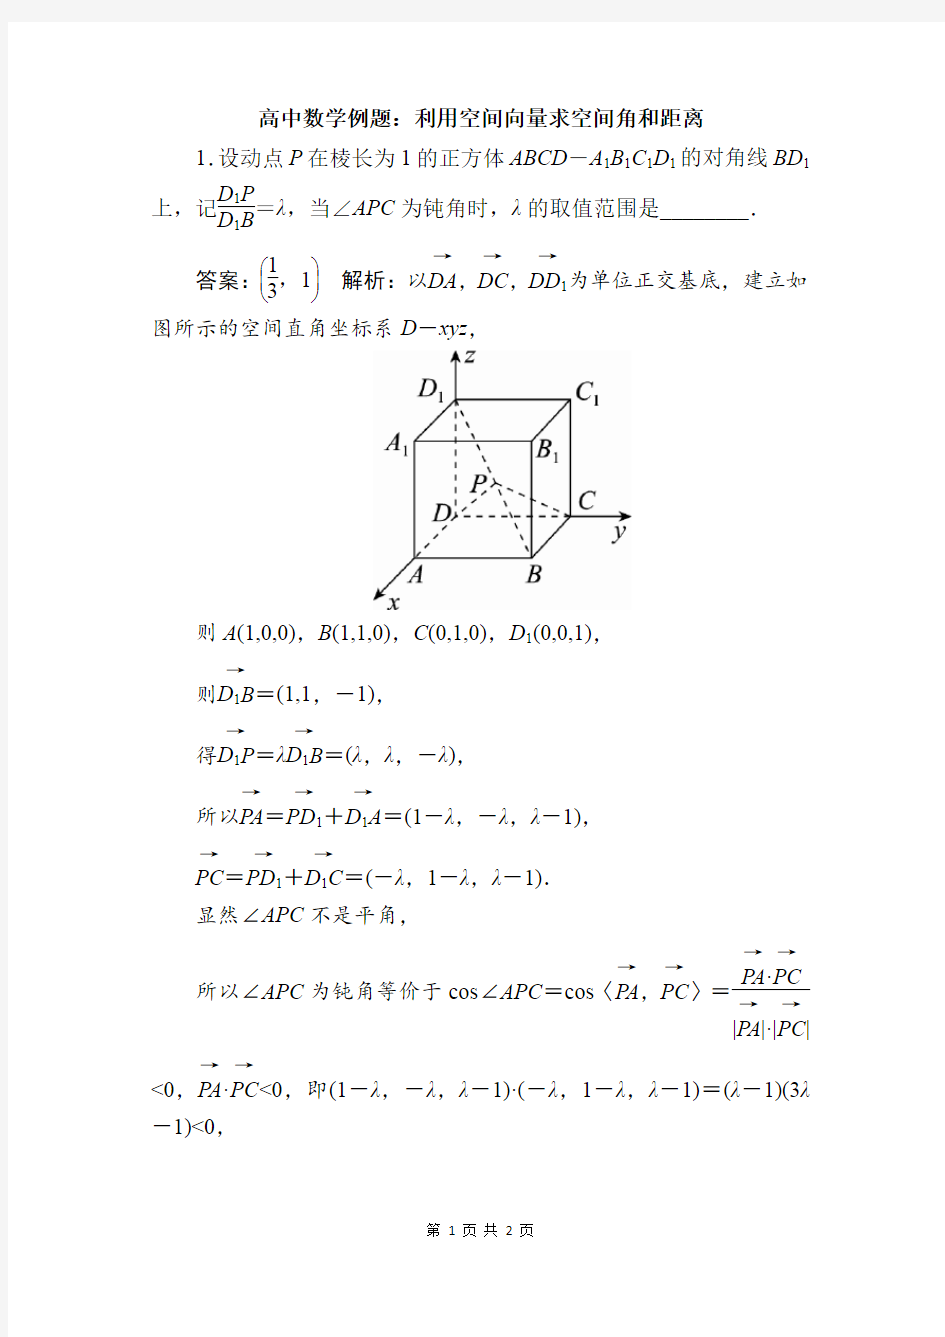 高二数学经典例题 (50)